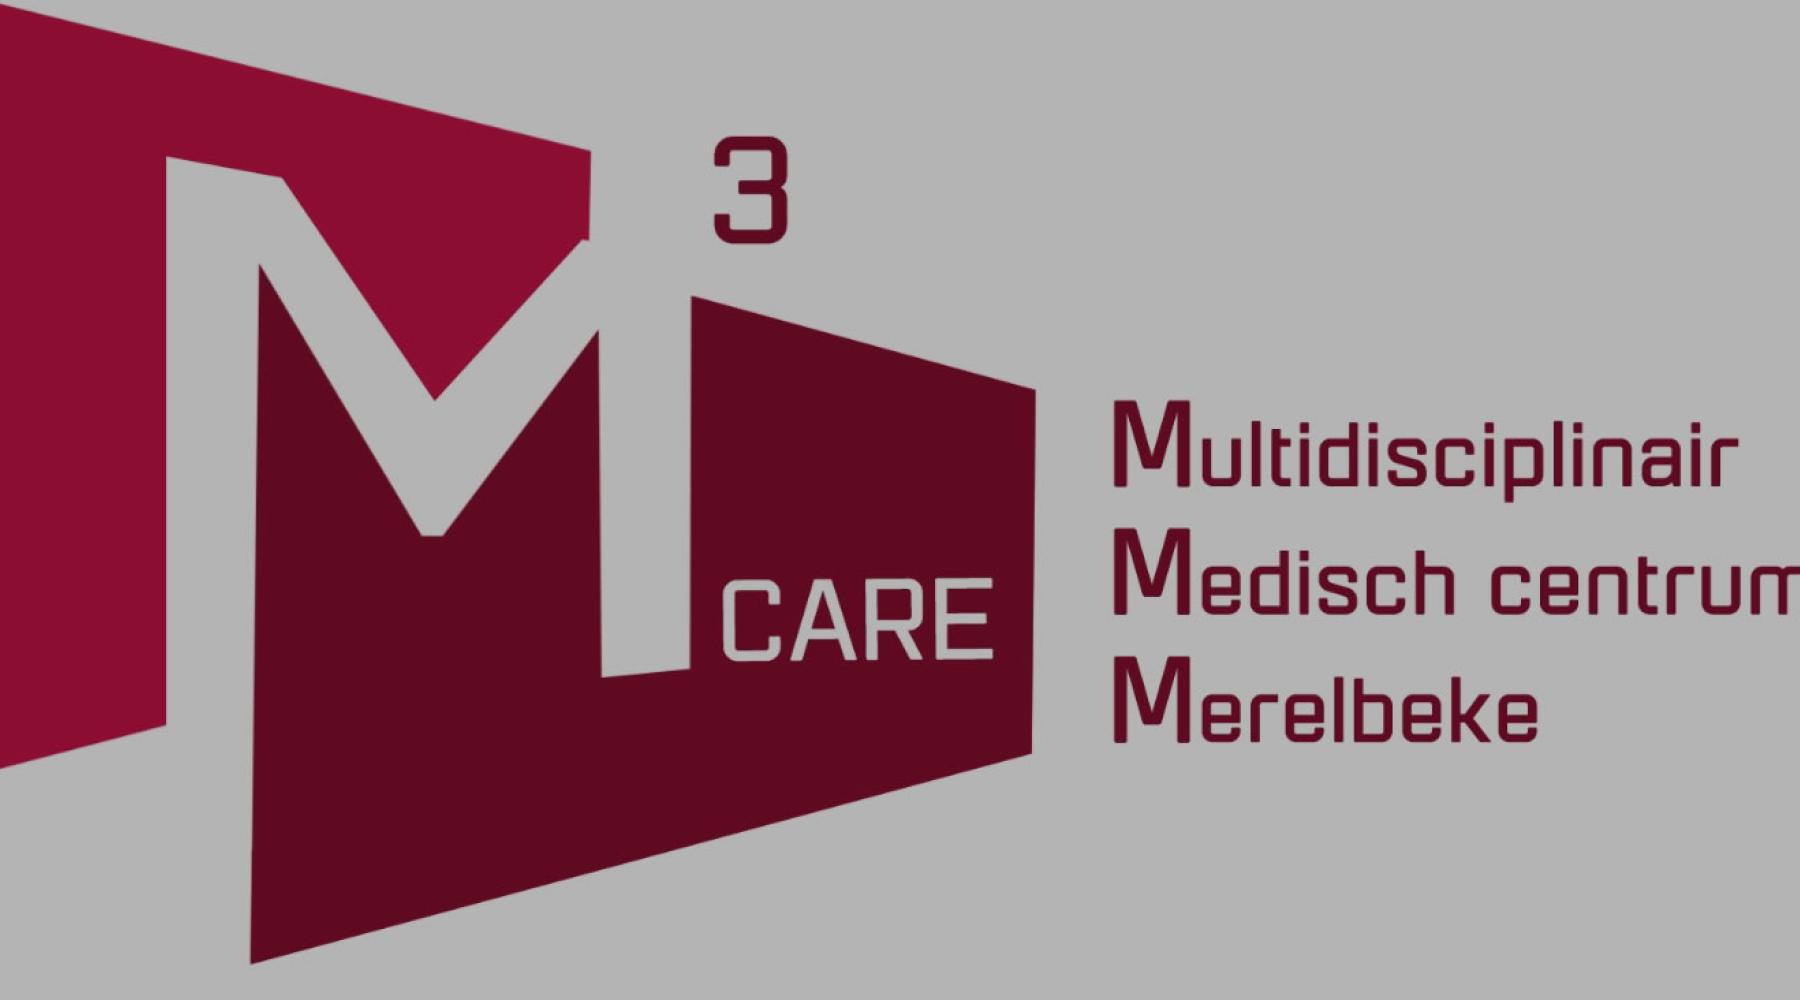 Multidisciplinair medisch centrum merelbeke